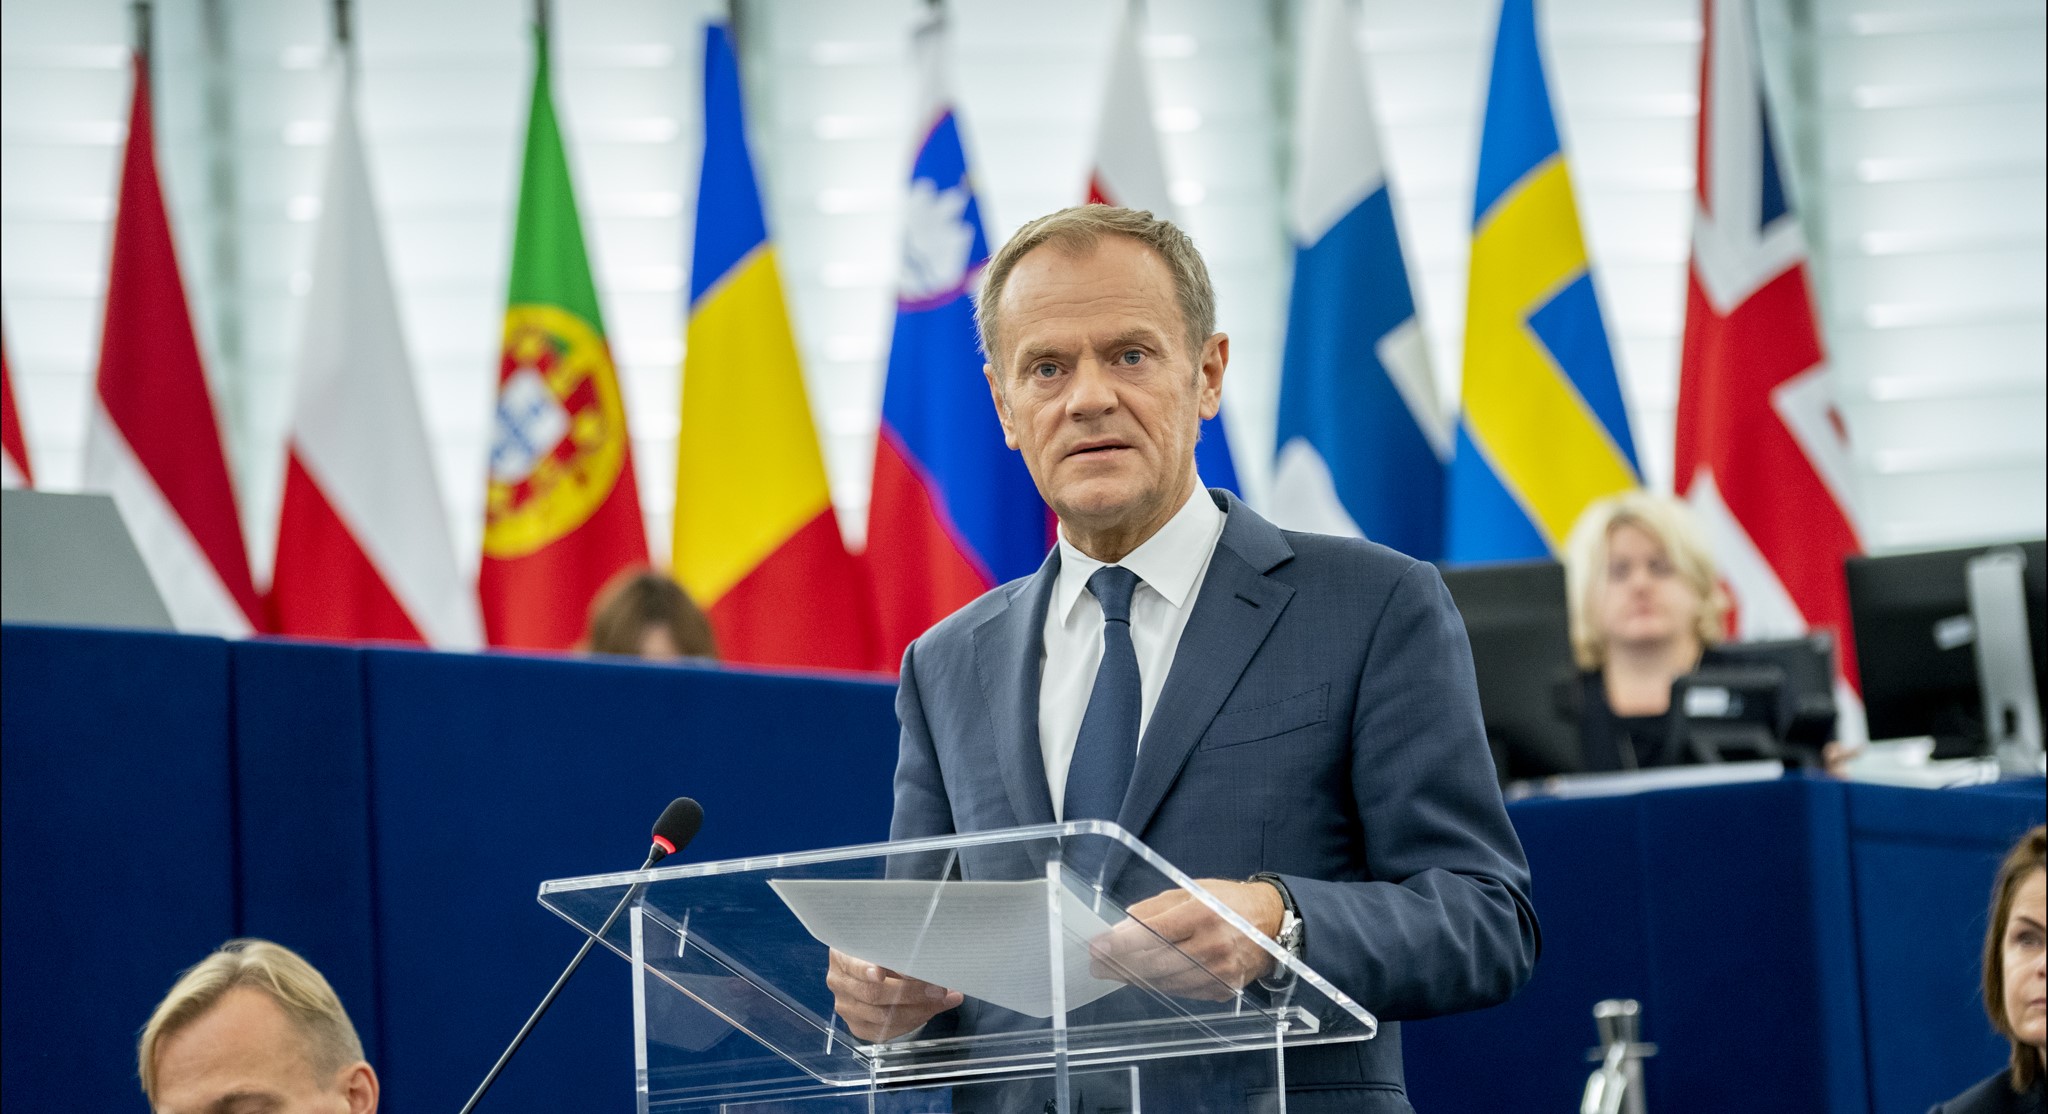 Główne partie w Polsce, PiS i PO, sprzeciwiają się zmianie traktatu UE